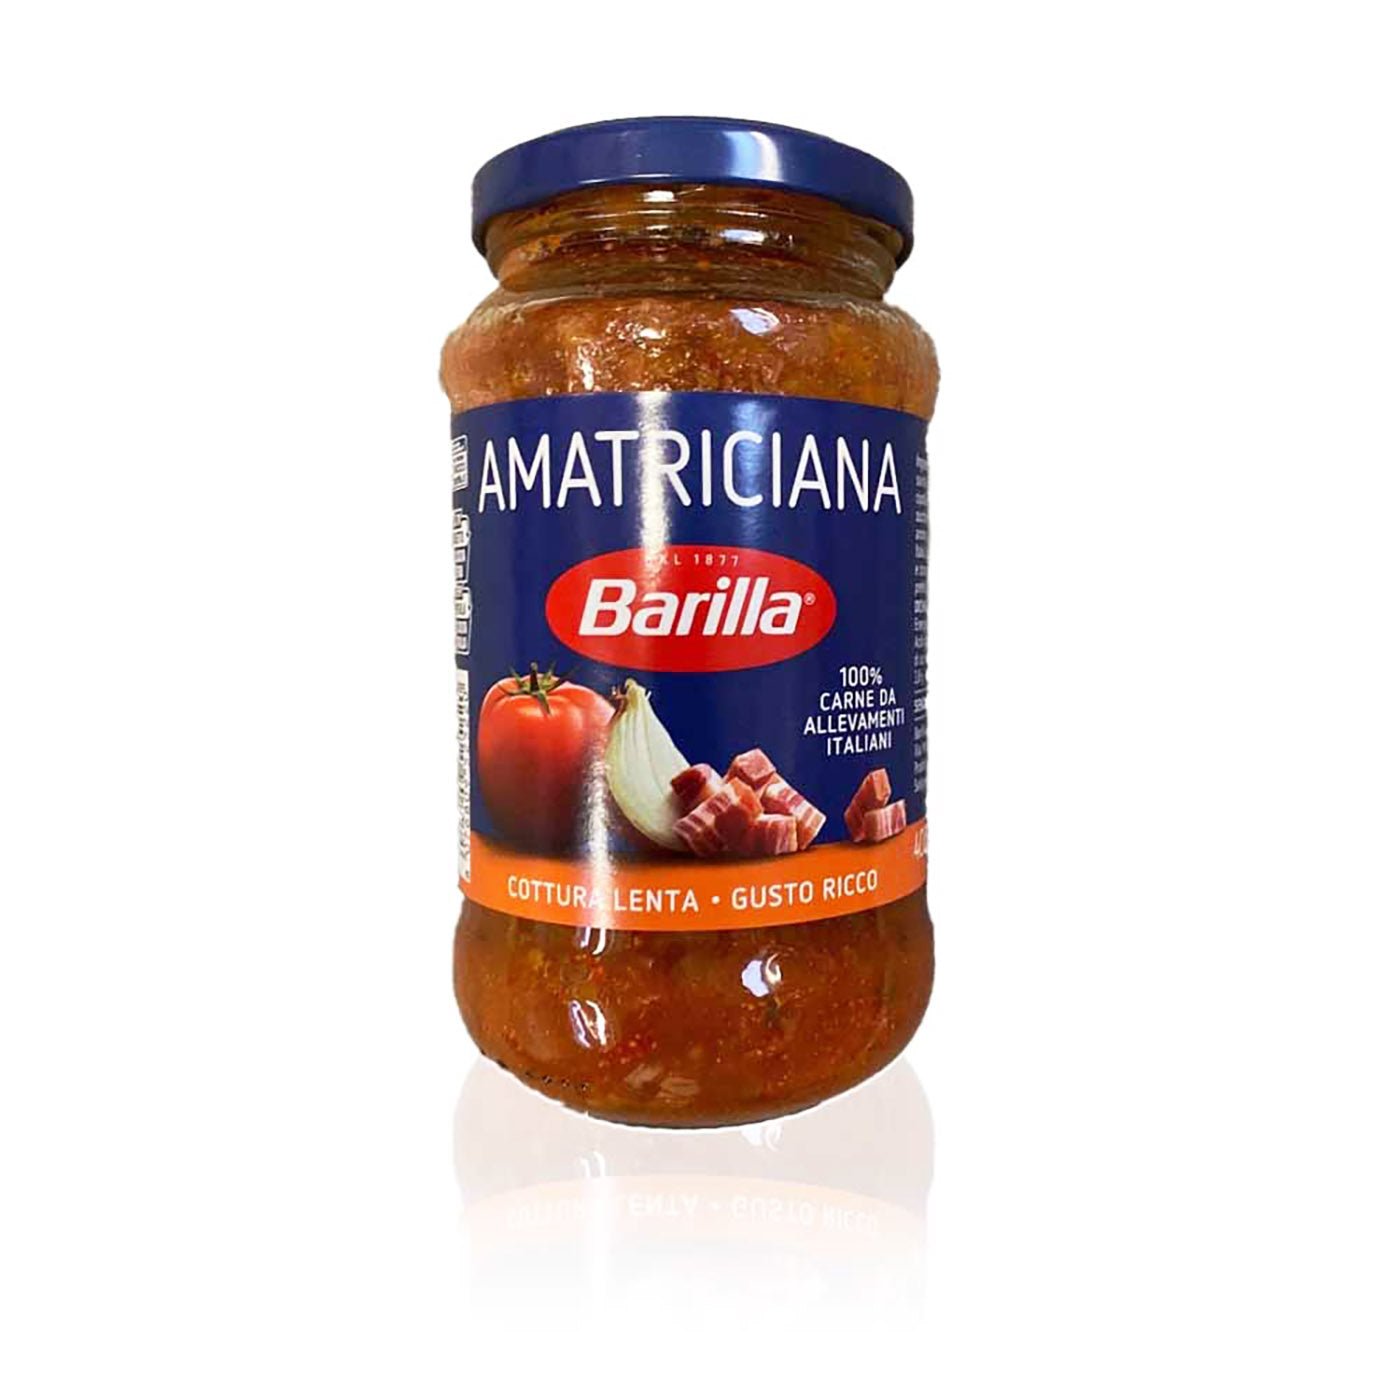 BARILLA - Amatriciana - 0,4kg - italienisch-einkaufen.de